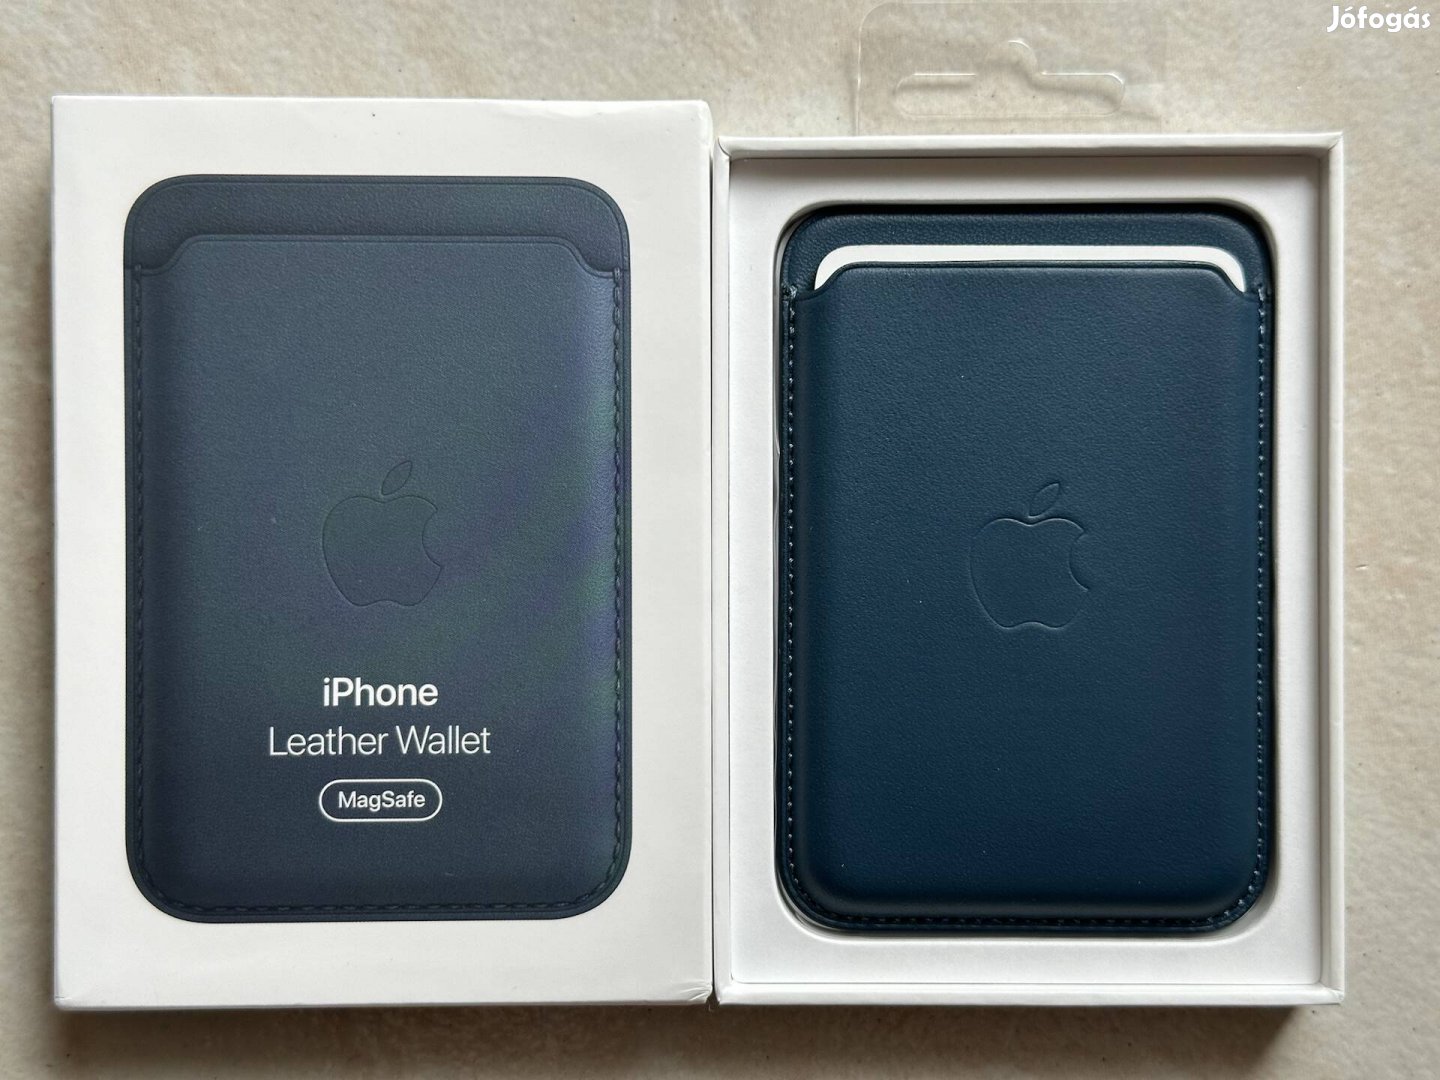 Új eredeti gyári Apple iphone magsafe bőrtarca wallet sötétkék 